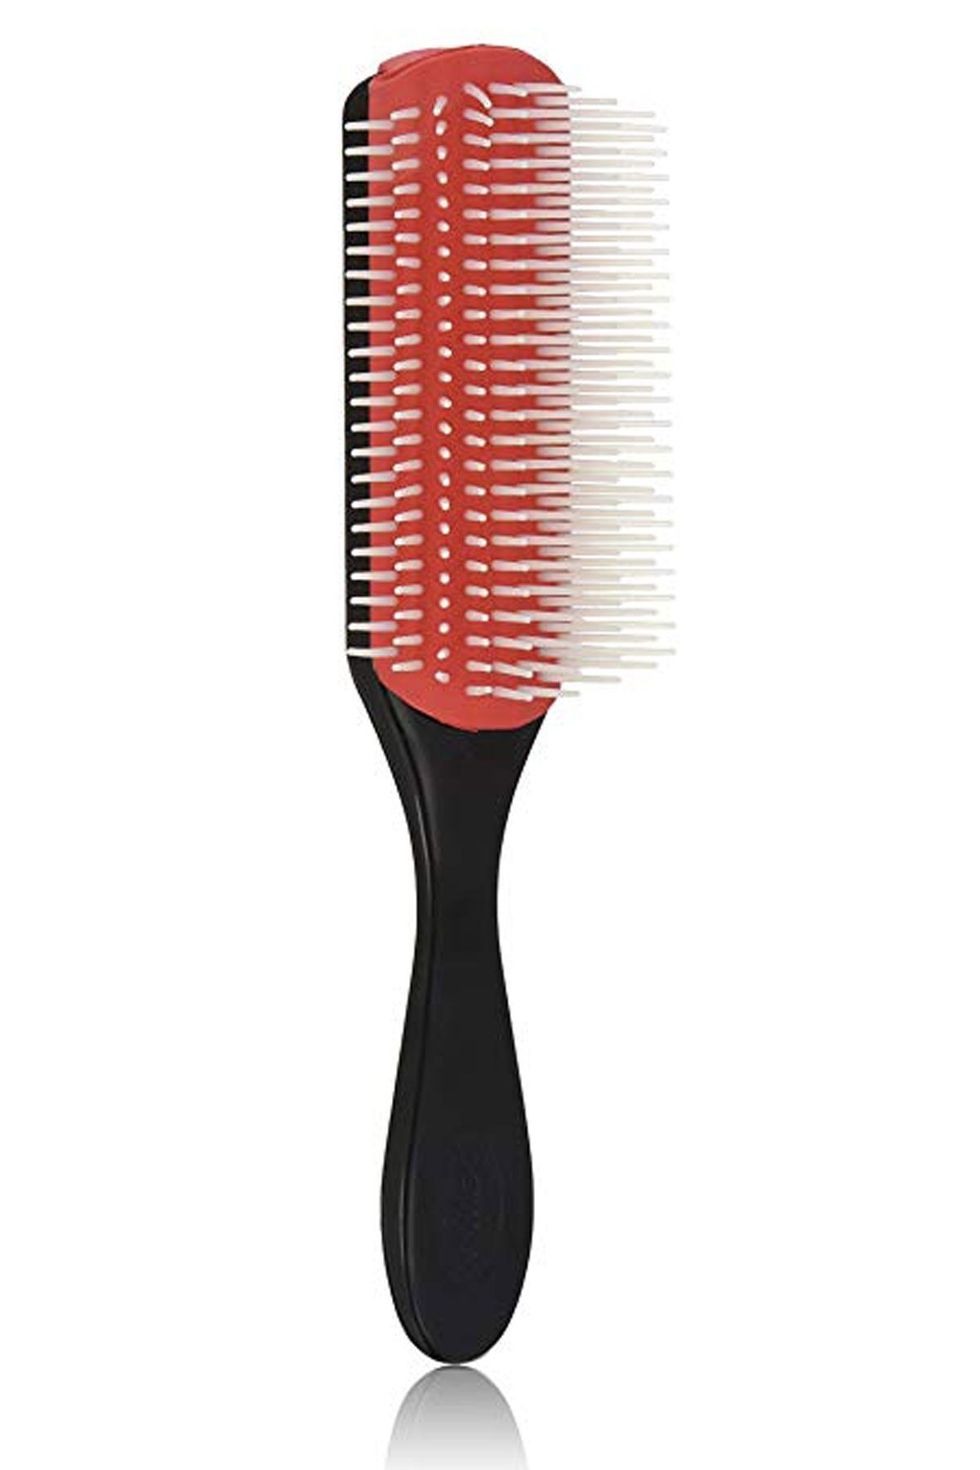 Twish Spiky 3 Hair Brush Shining Silver - Hair Brush, shining silver